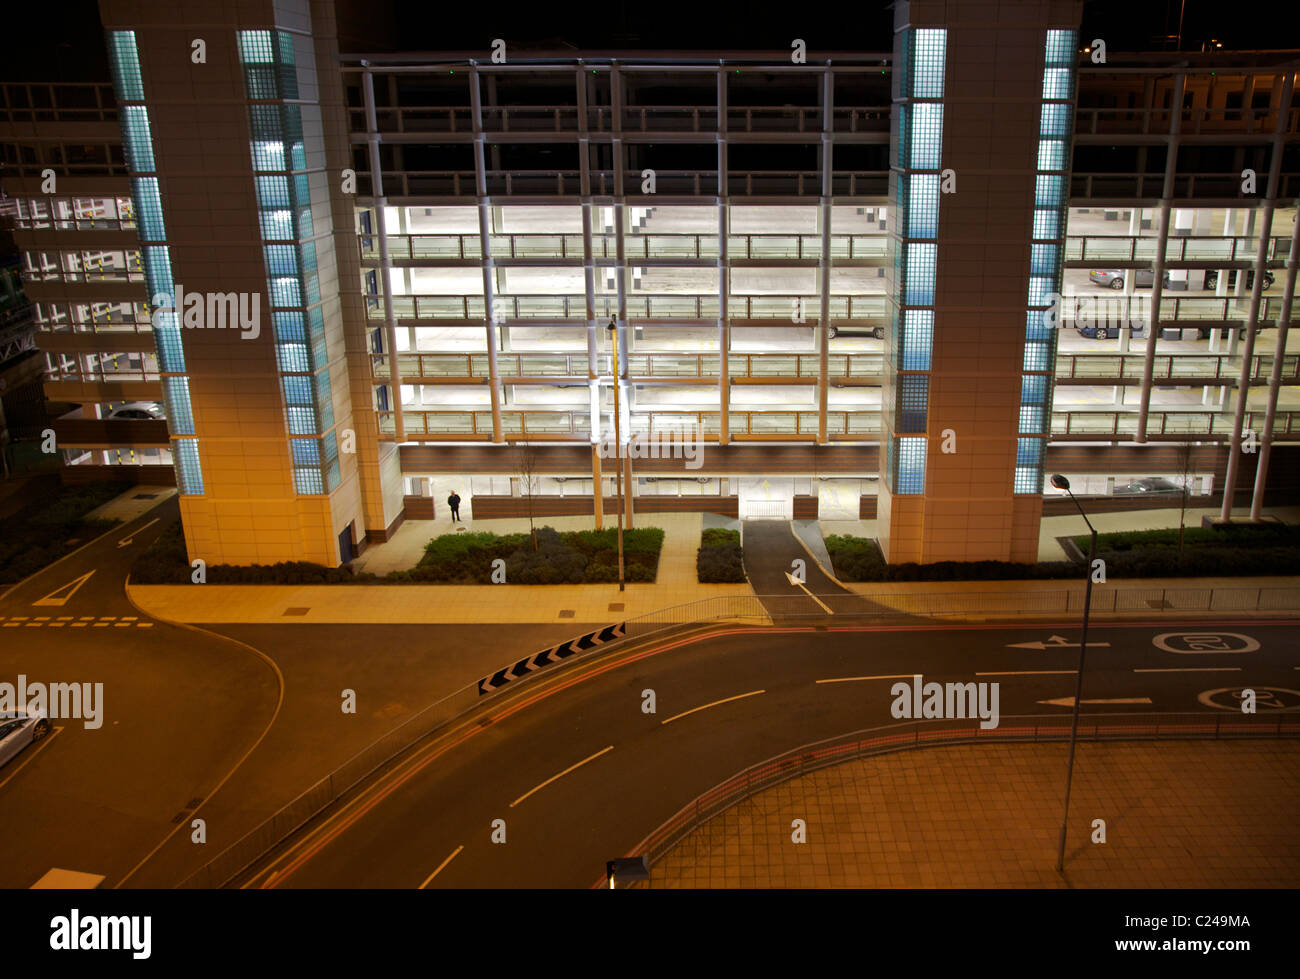 Birmingham Airport parking con hombre solitario Foto de stock